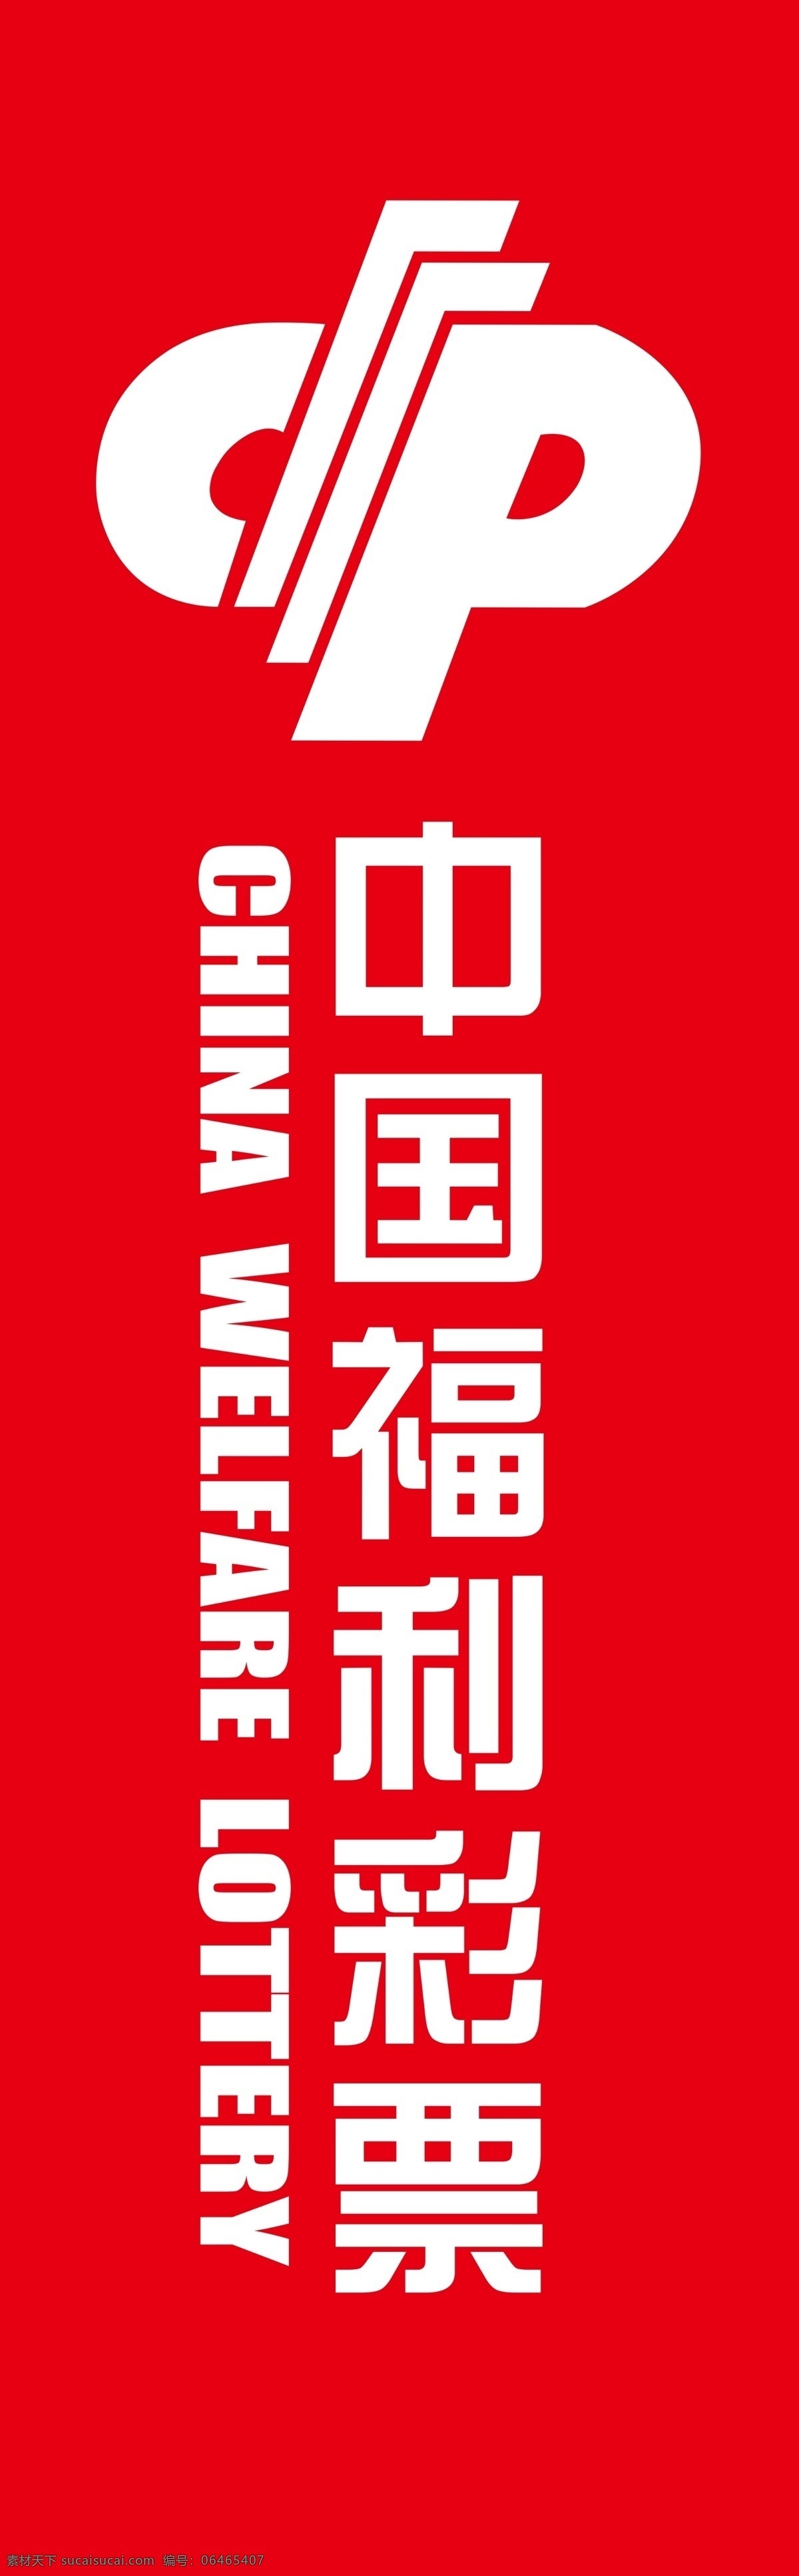 中国福利彩票 福利彩票标志 福利彩票标识 福彩 福彩标志 福彩广告招牌 标志图标 企业 logo 标志